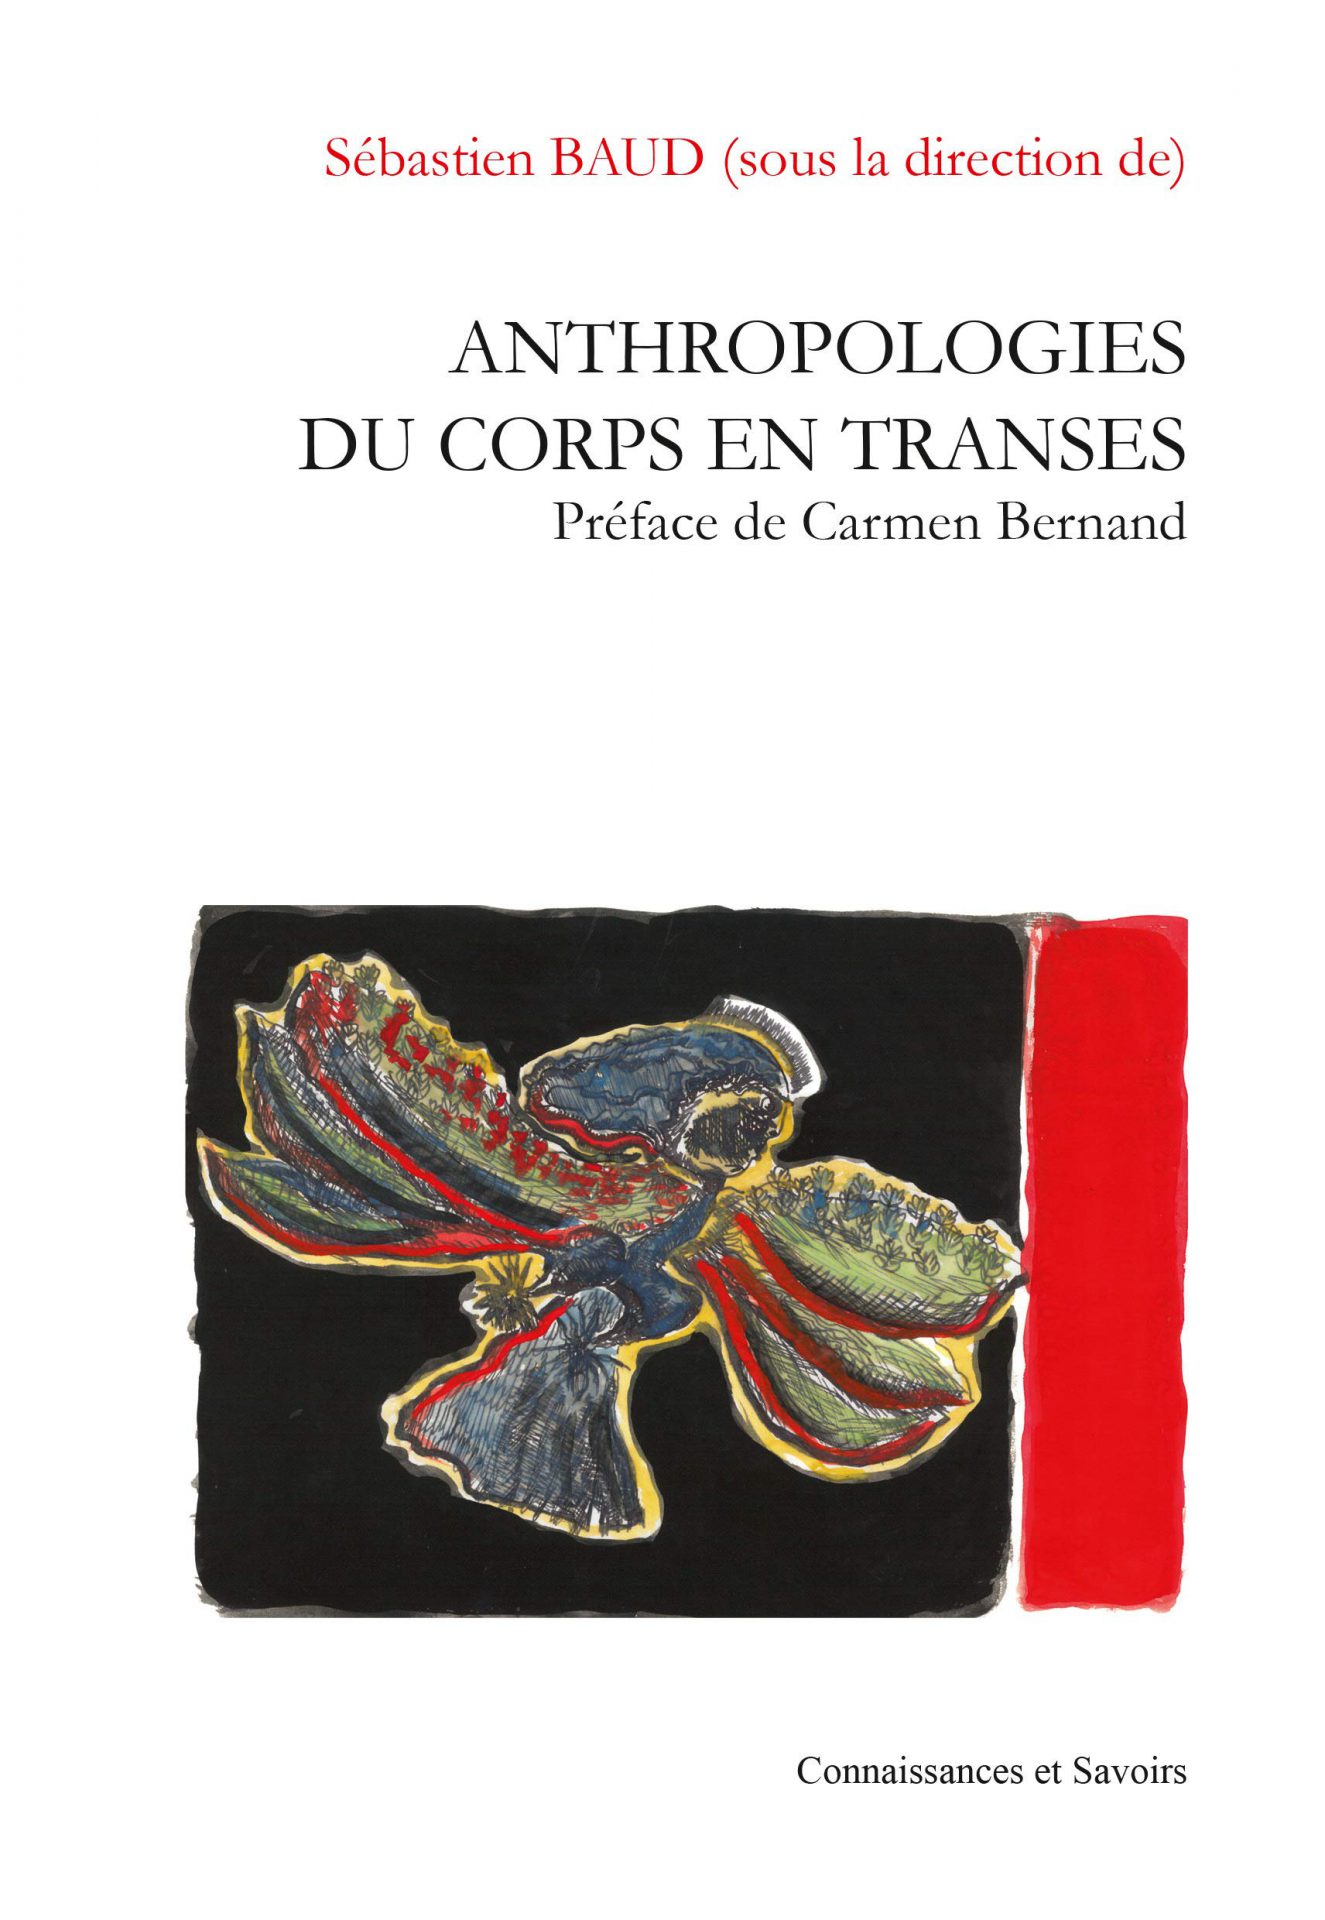 Sébastien Baud - Anthropologie du corps en transes - Éd. Connaissances et Savoirs / 2016